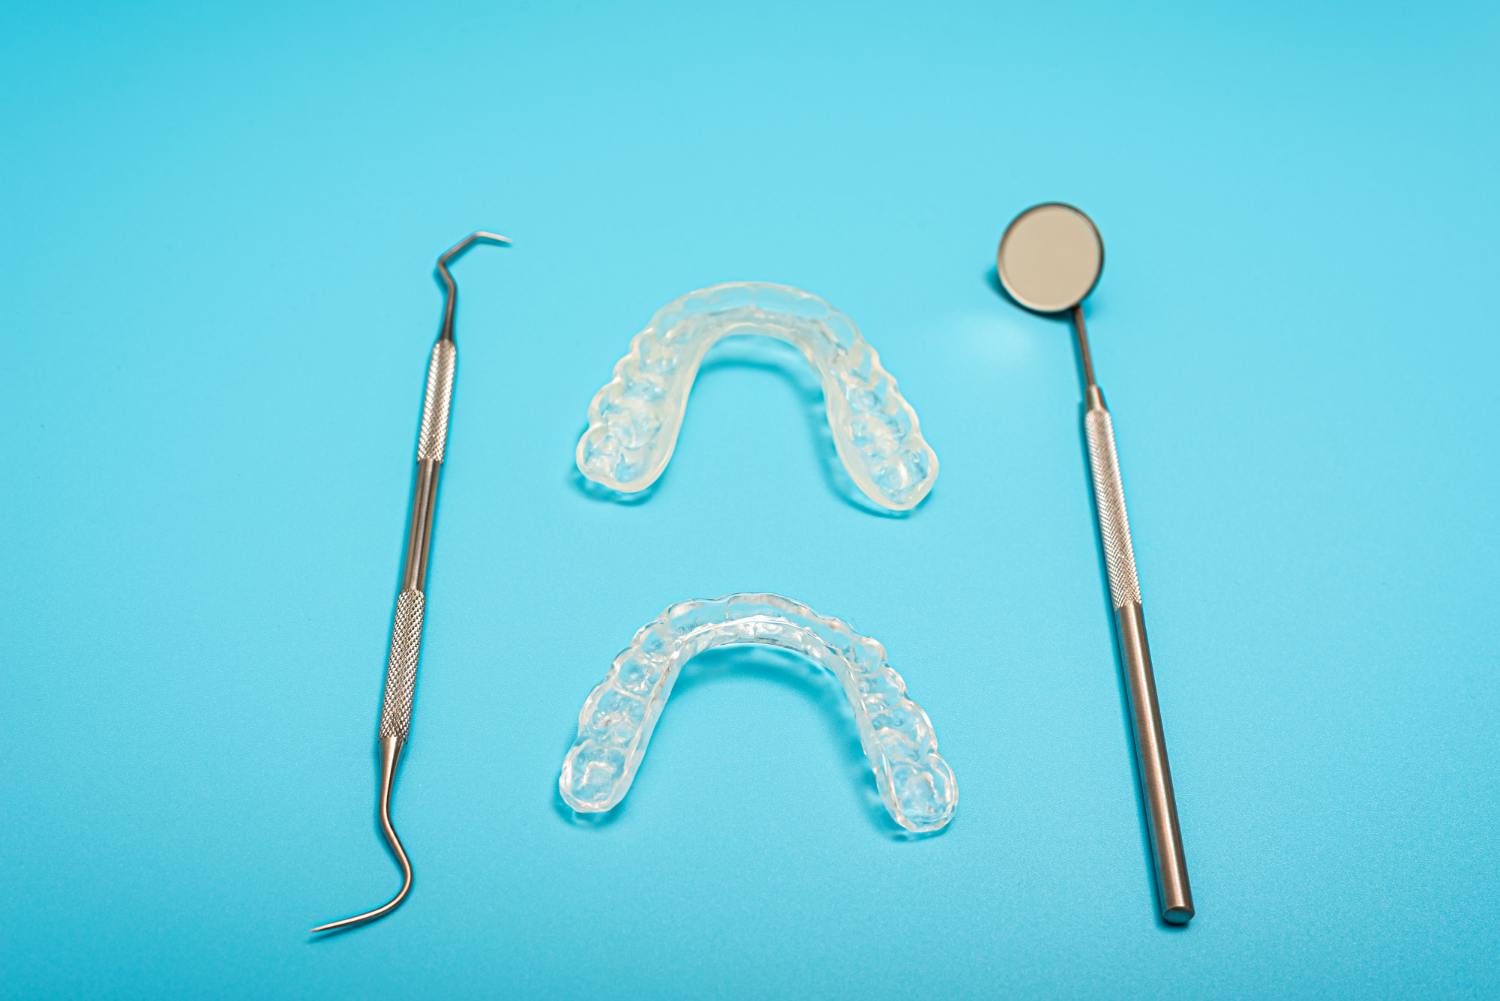 La retención en ortodoncia es clave para prevenir que los dientes vuelvan a su posición inicial